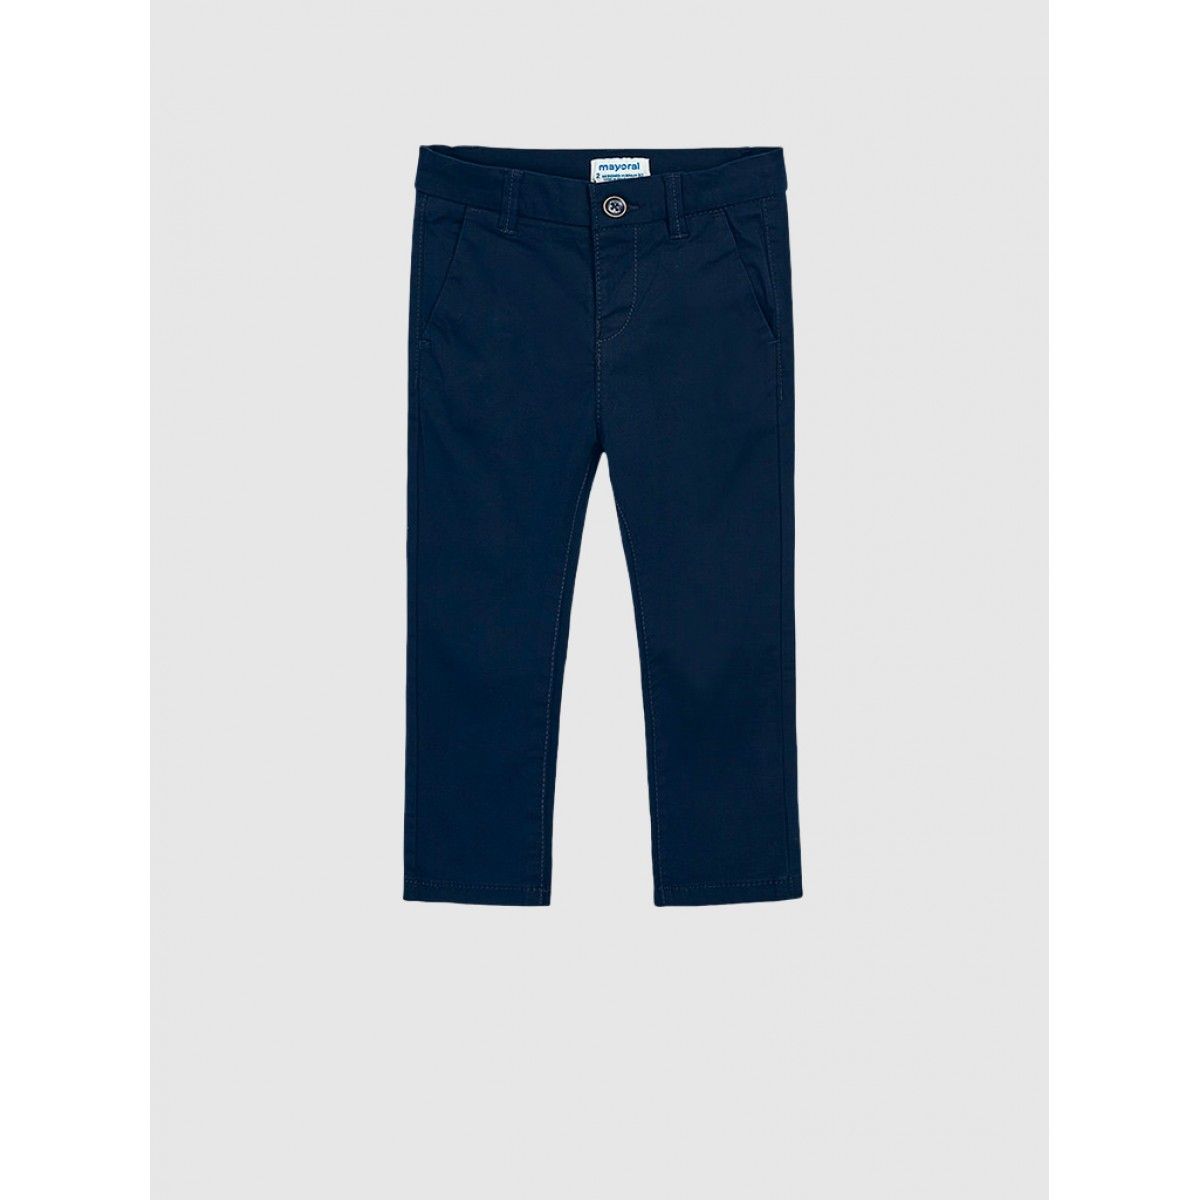 Pants Boy Navy Blue Mayoral - N20512 | Mellmak